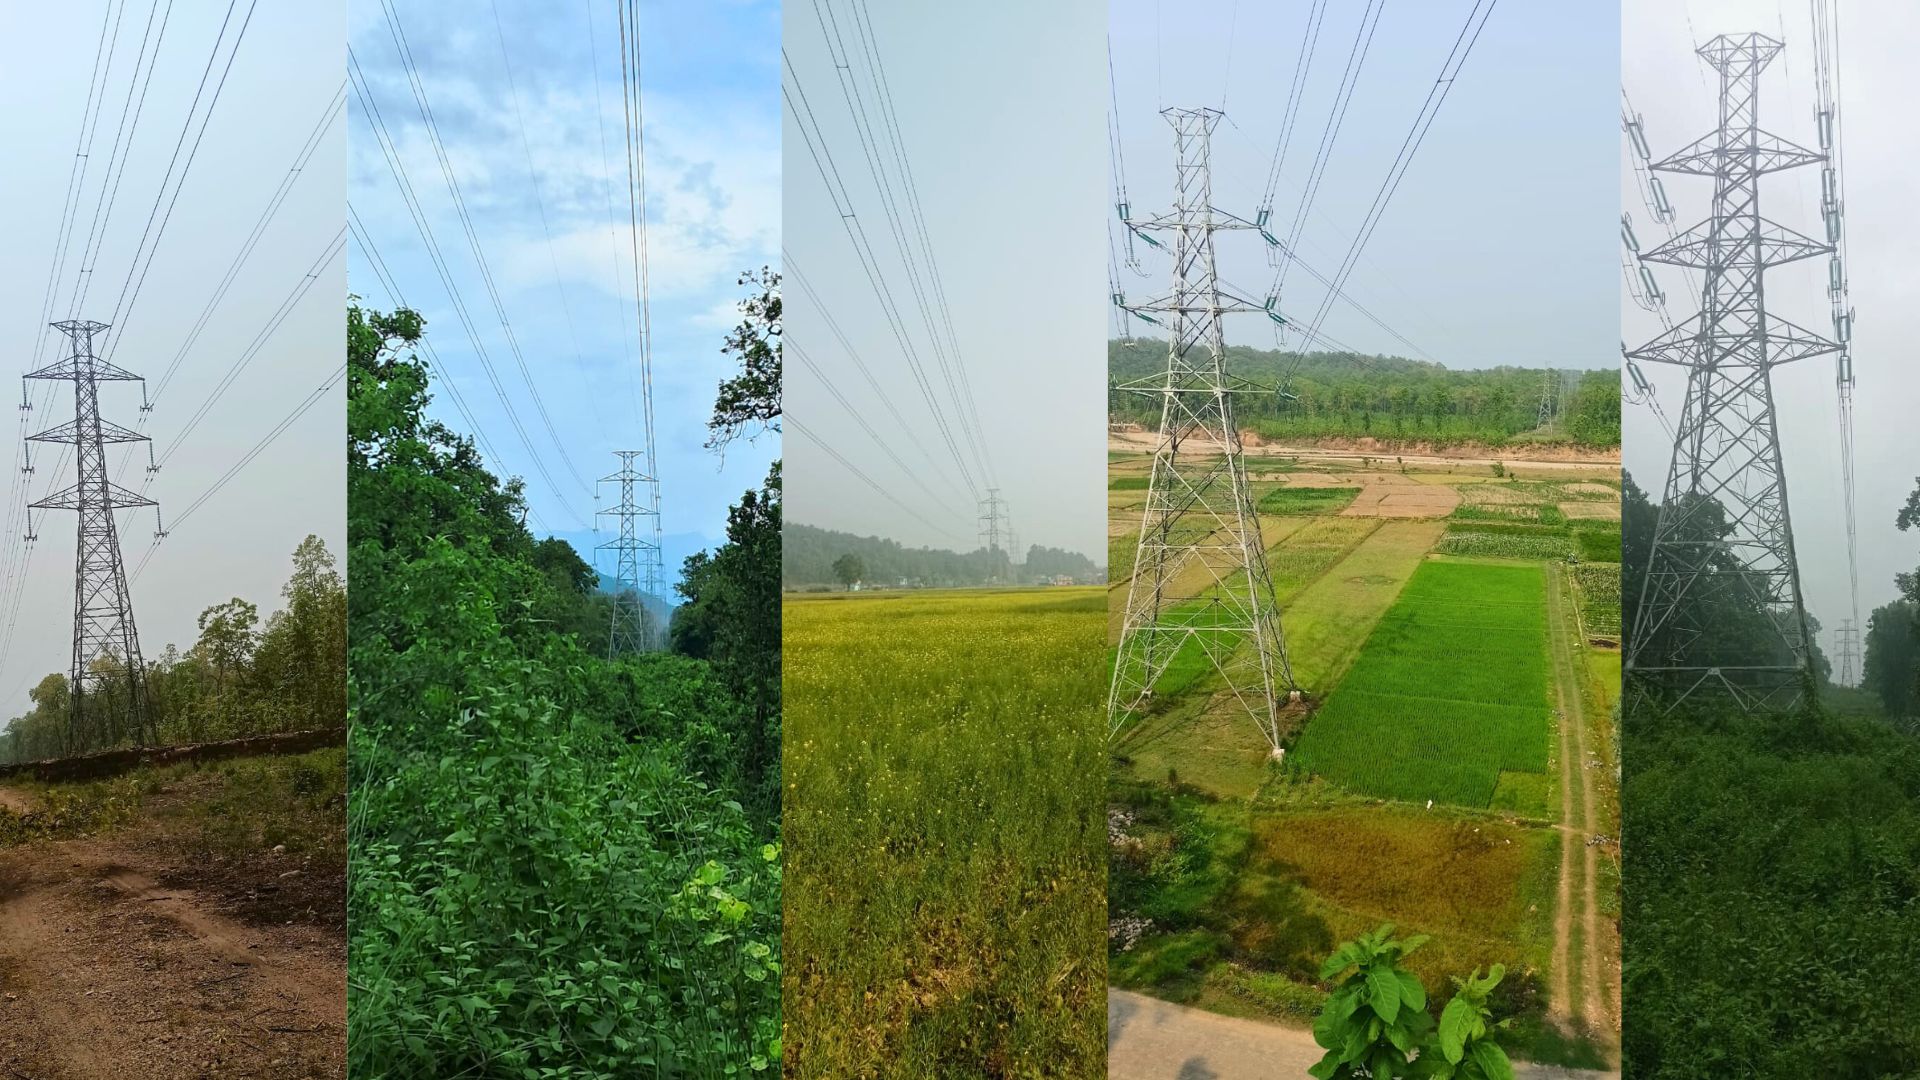 भरतपुर–बर्दघाट प्रसारण लाइन निर्माण सम्पन्न, तत्कालका लागि १३२ केभीमा सञ्चालन गरिने